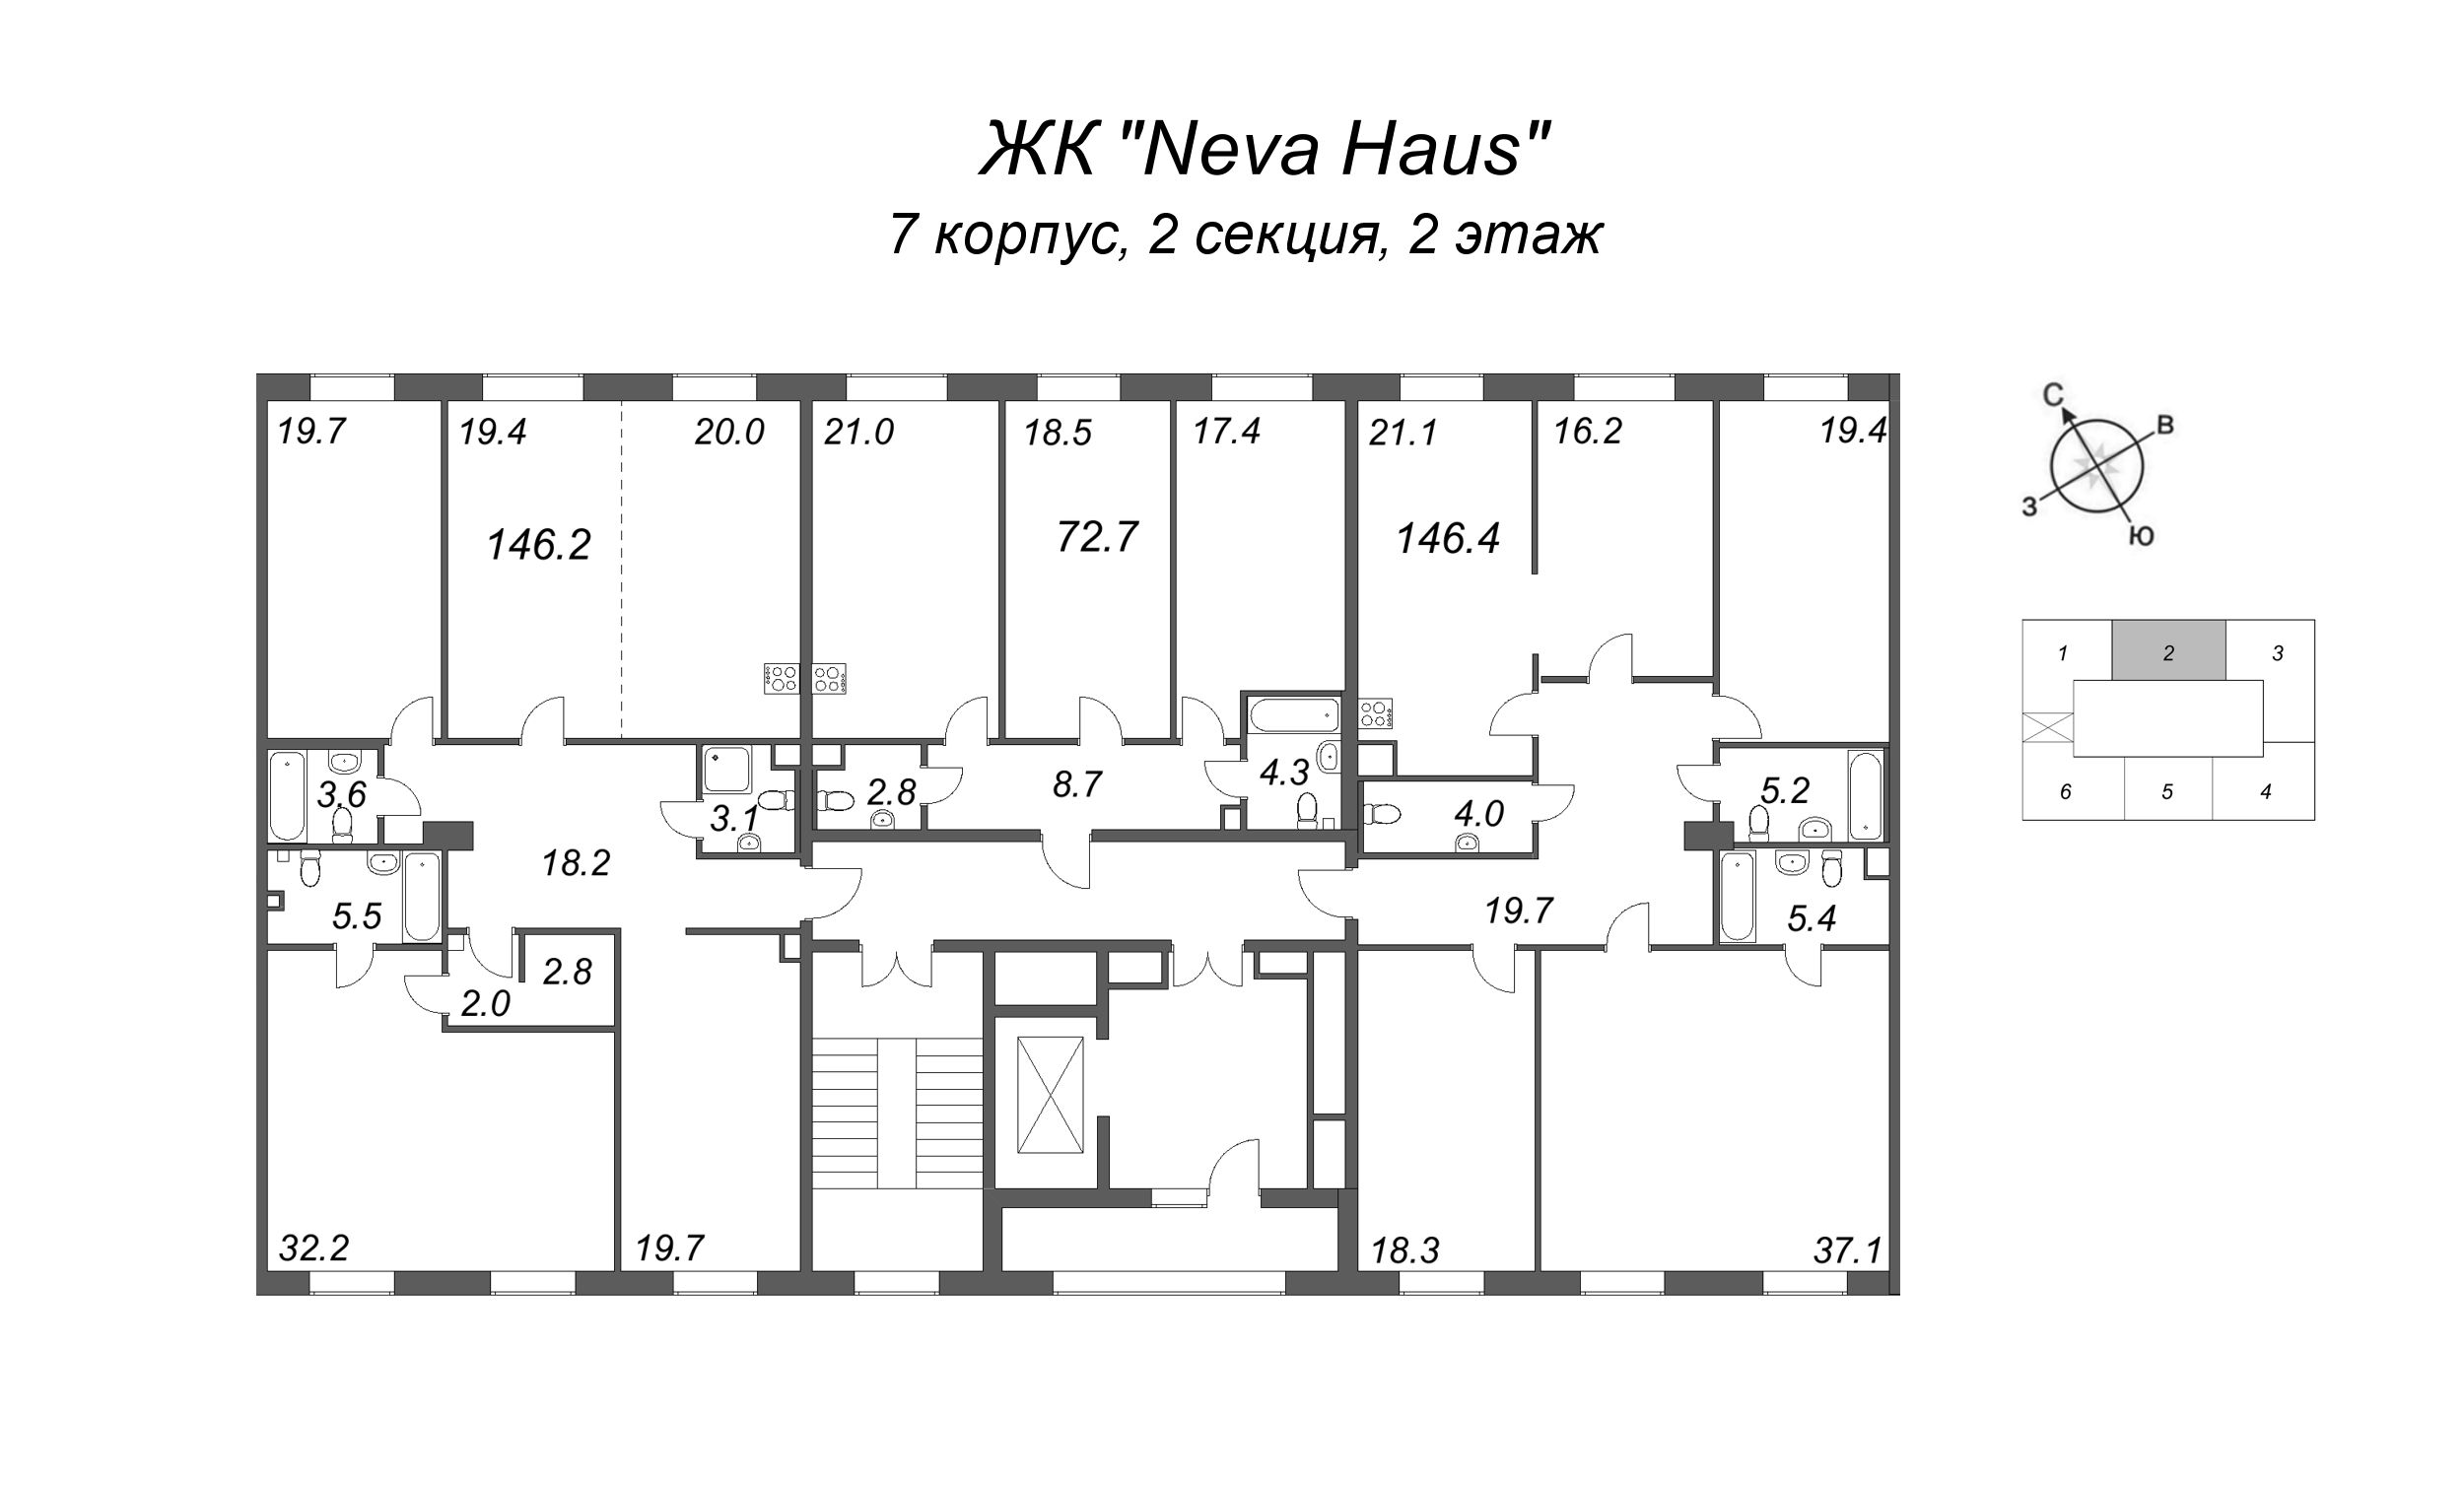 5-комнатная (Евро) квартира, 146.8 м² в ЖК "Neva Haus" - планировка этажа